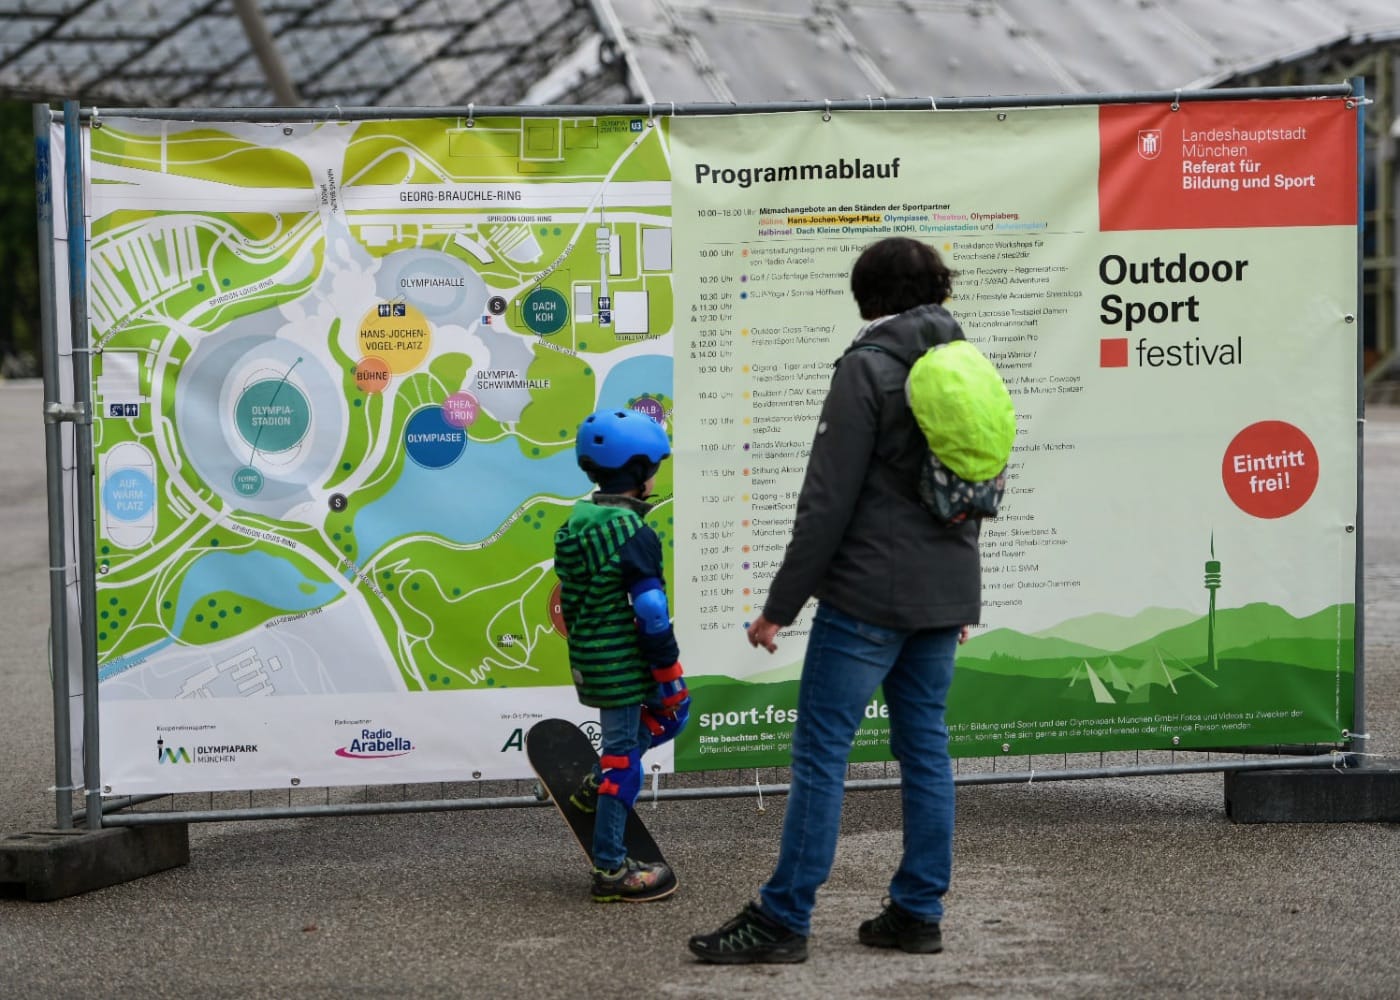 Outdoorsportfestival im Olympiapark in München, Kinder und Familien können kostenlos Sportangebote ausprobieren // HIMBEER